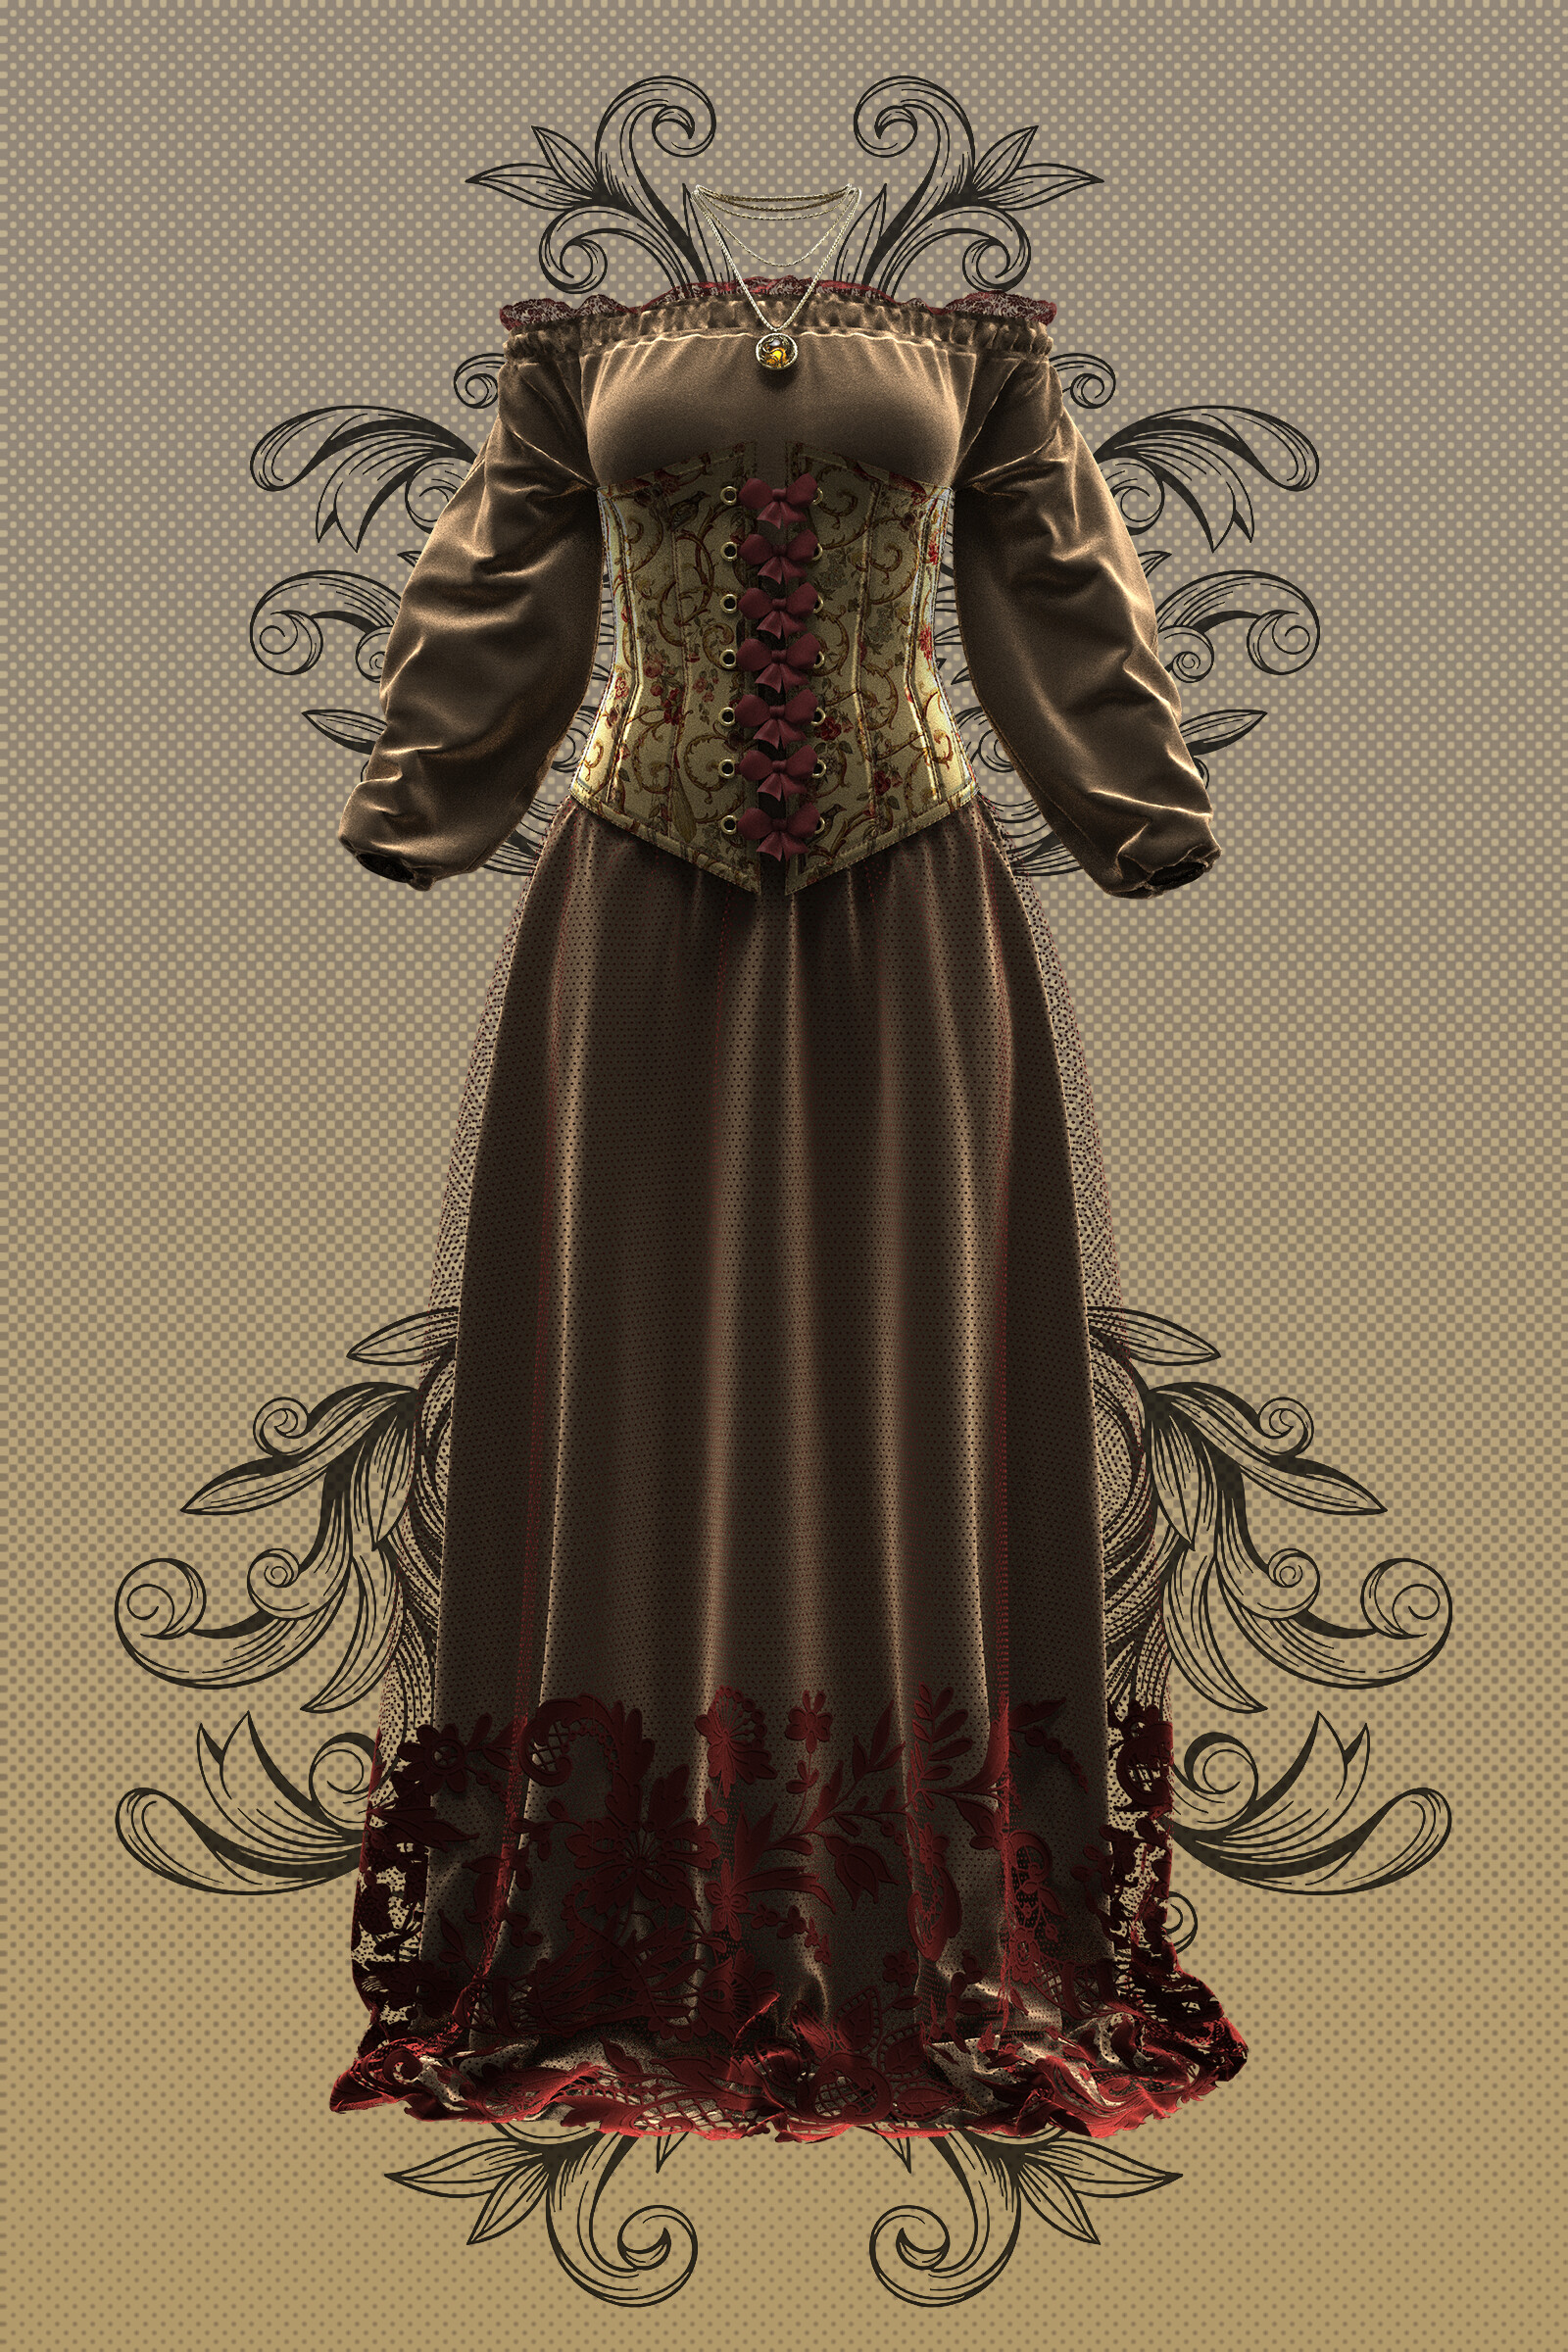 ArtStation - Medieval Dress